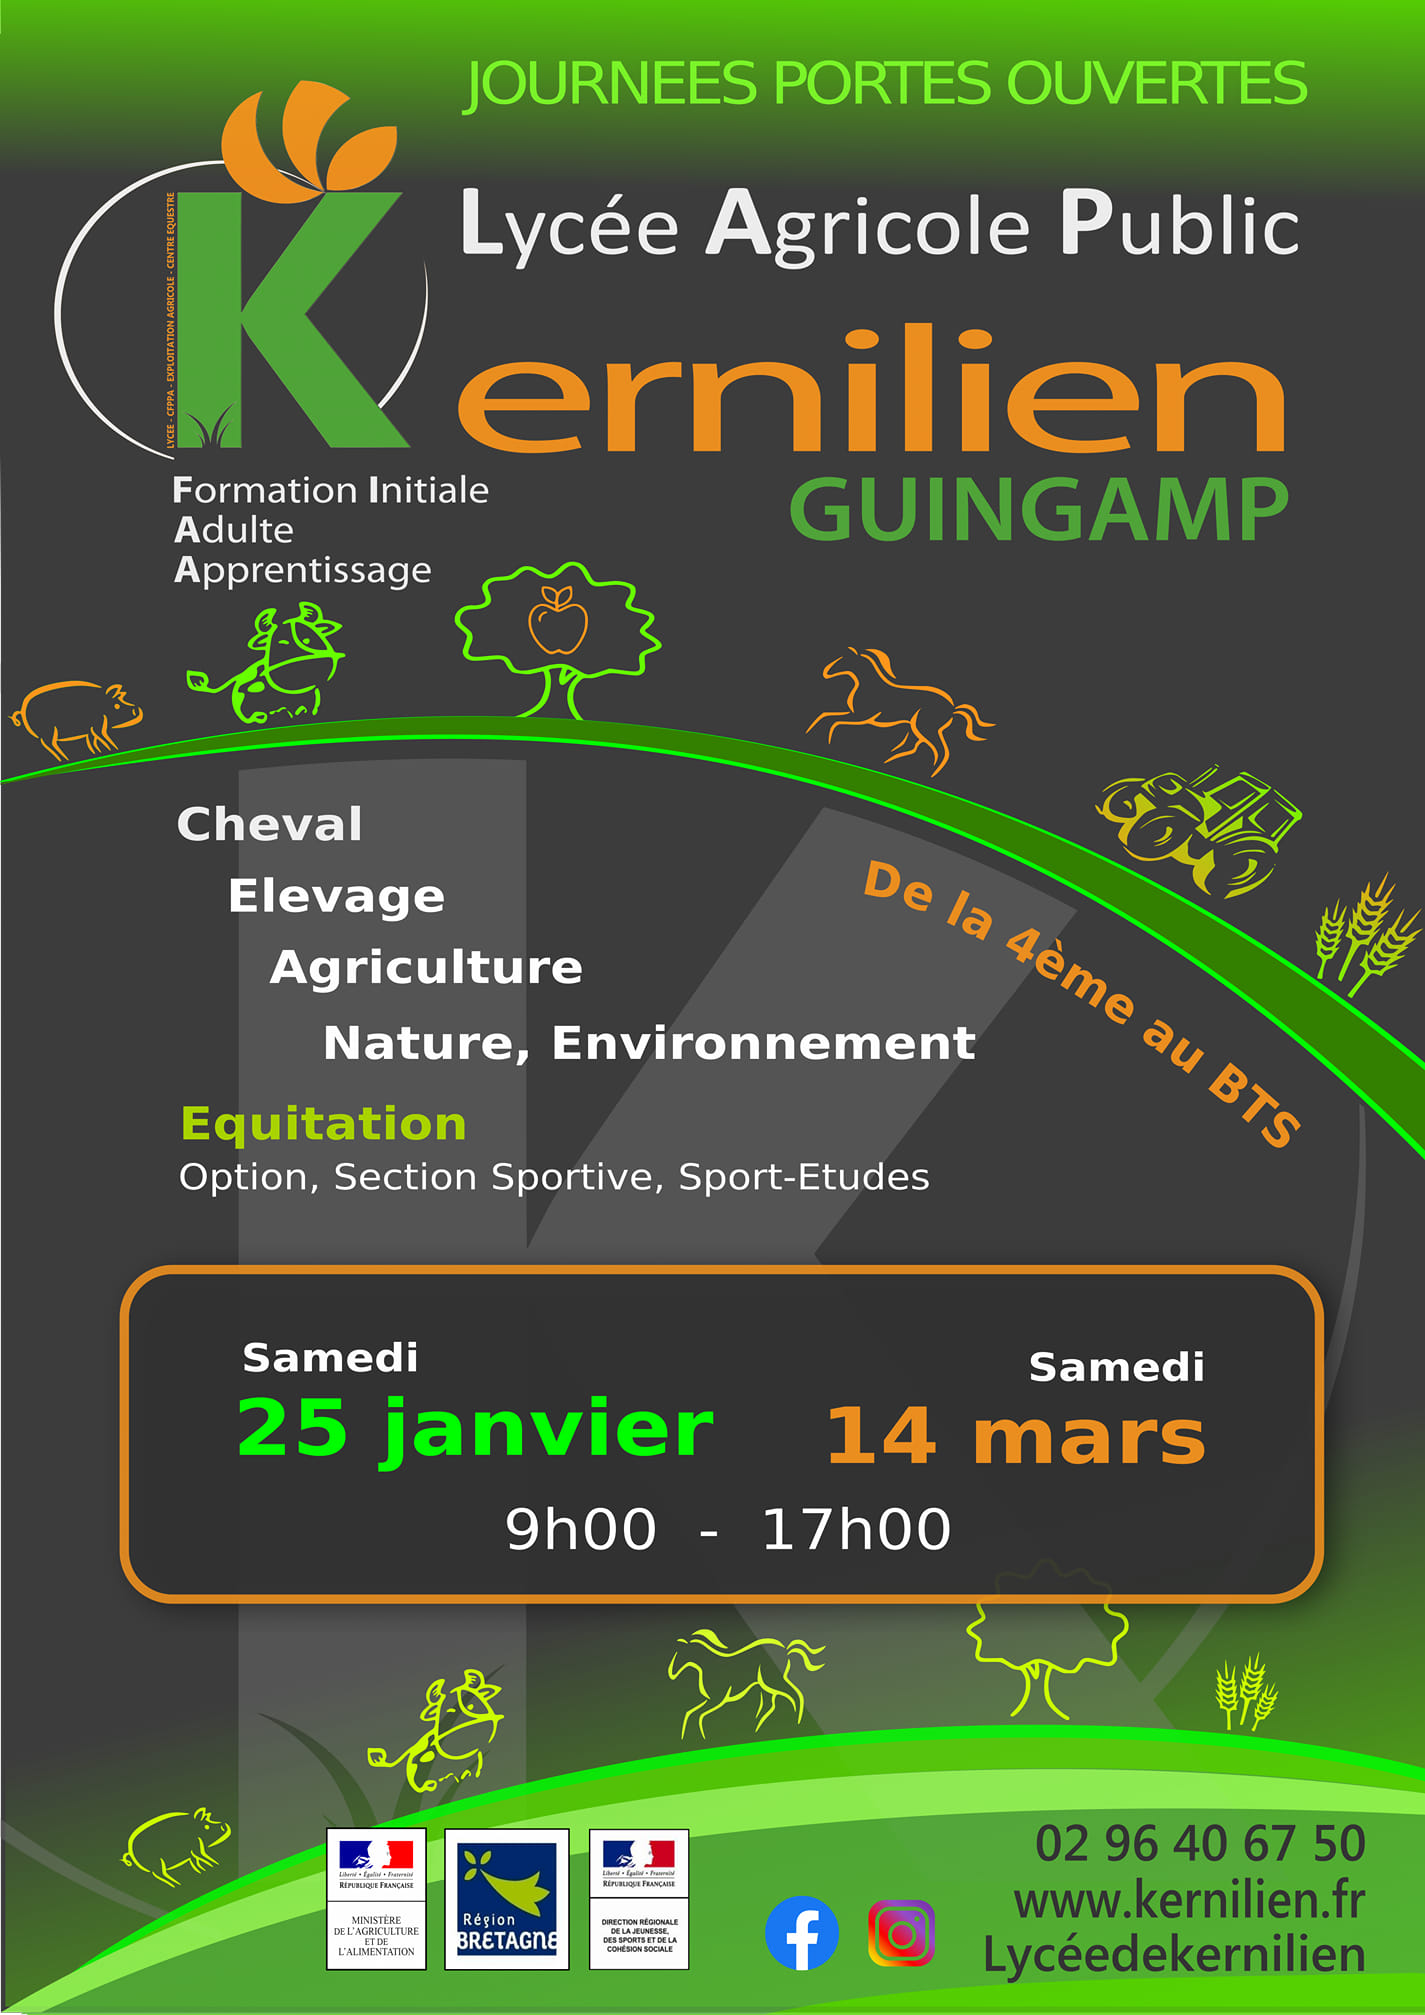 Journée Portes Ouvertes Lycée de Kernilien à Guigamp